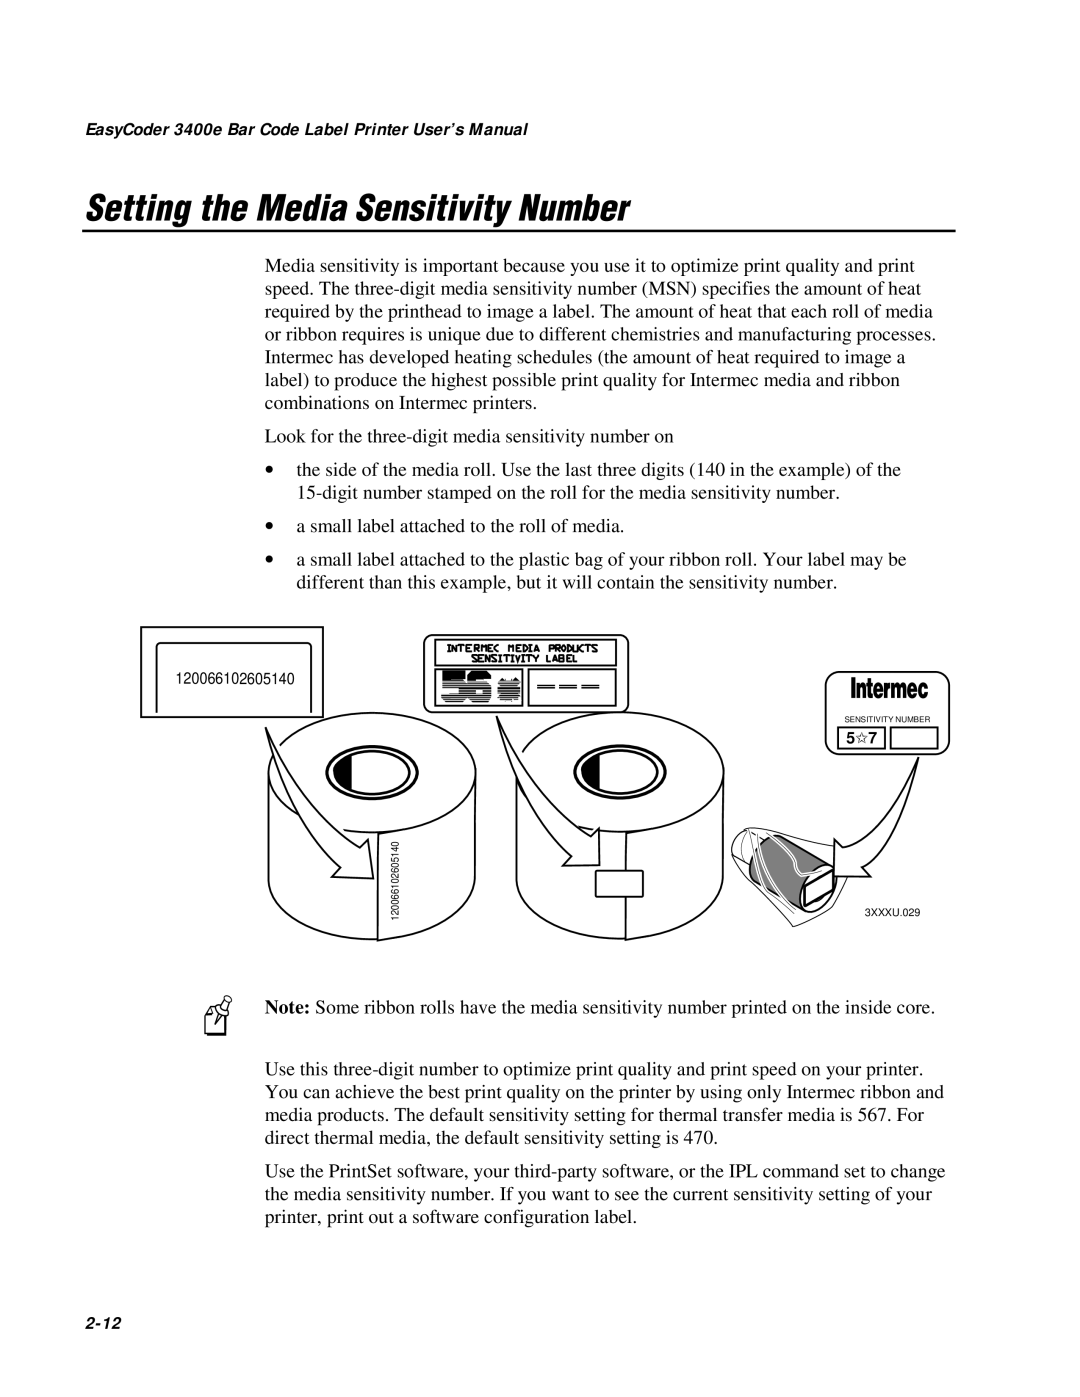 IBM user manual Setting the Media Sensitivity Number, EasyCoder 3400e Bar Code Label Printer User’s Manual, 2-12 